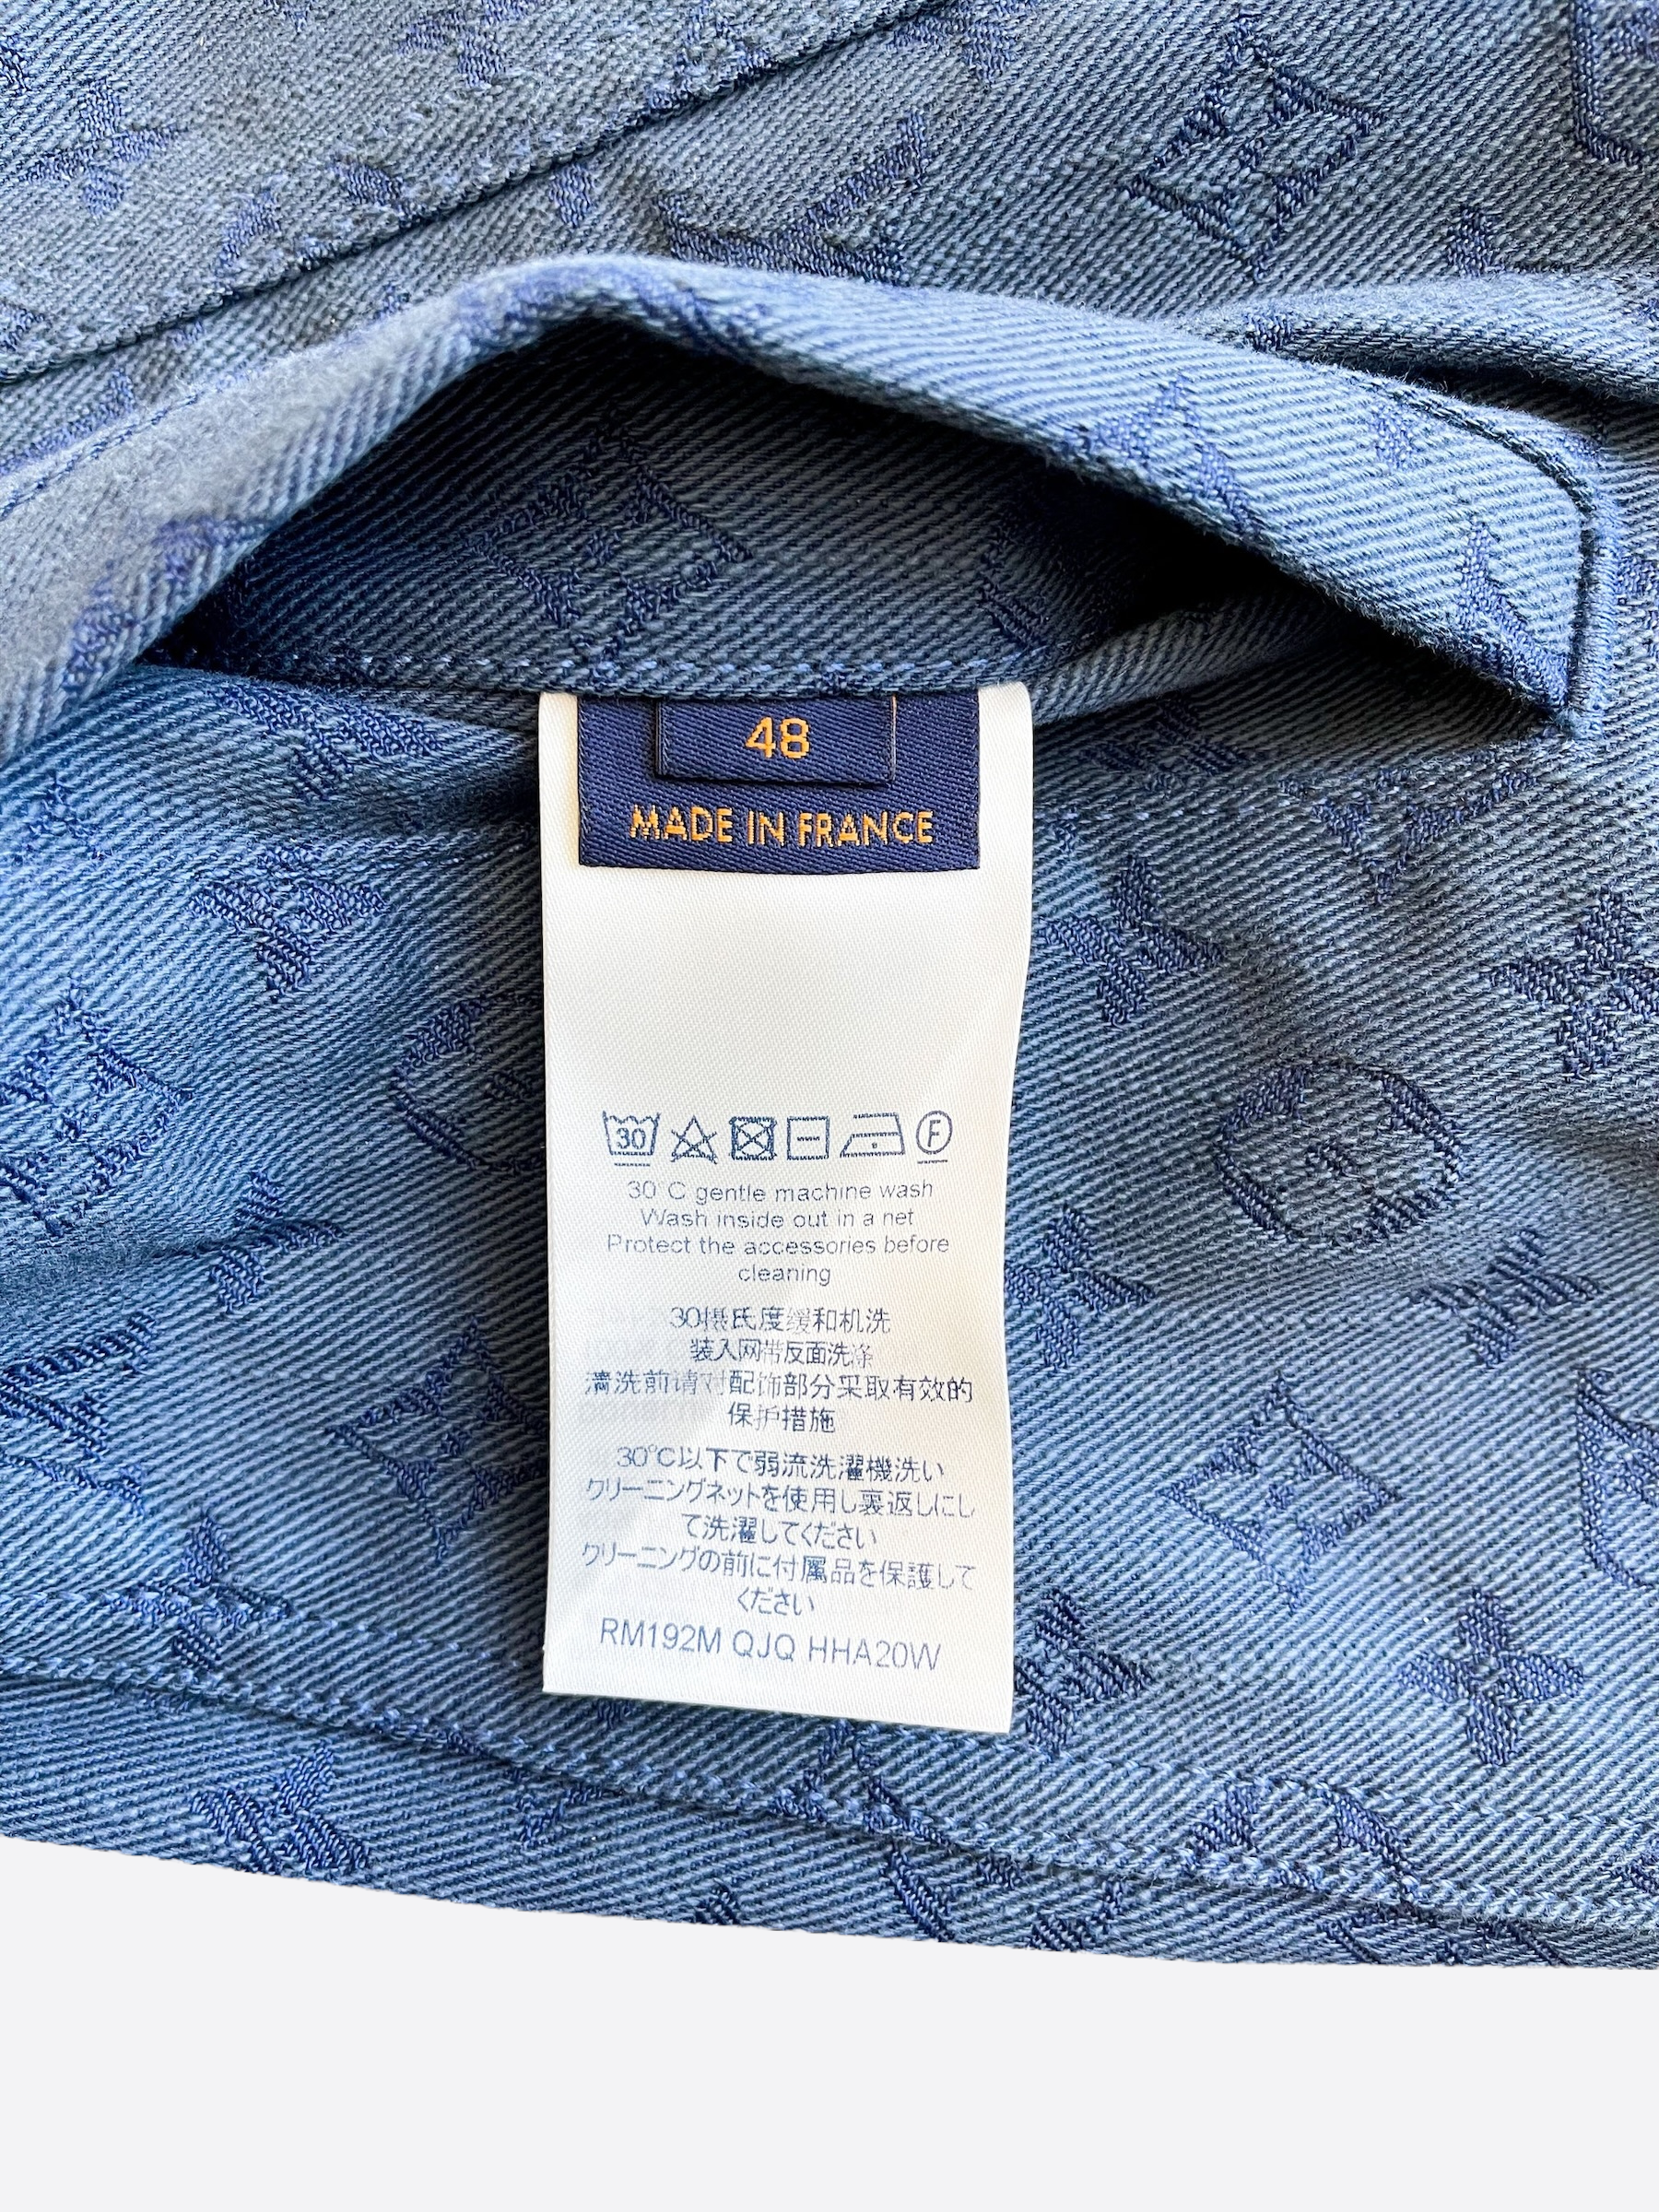 Louis Vuitton Blue Logo Monogram Denim Contrast Collar Detail Jacket L Louis  Vuitton